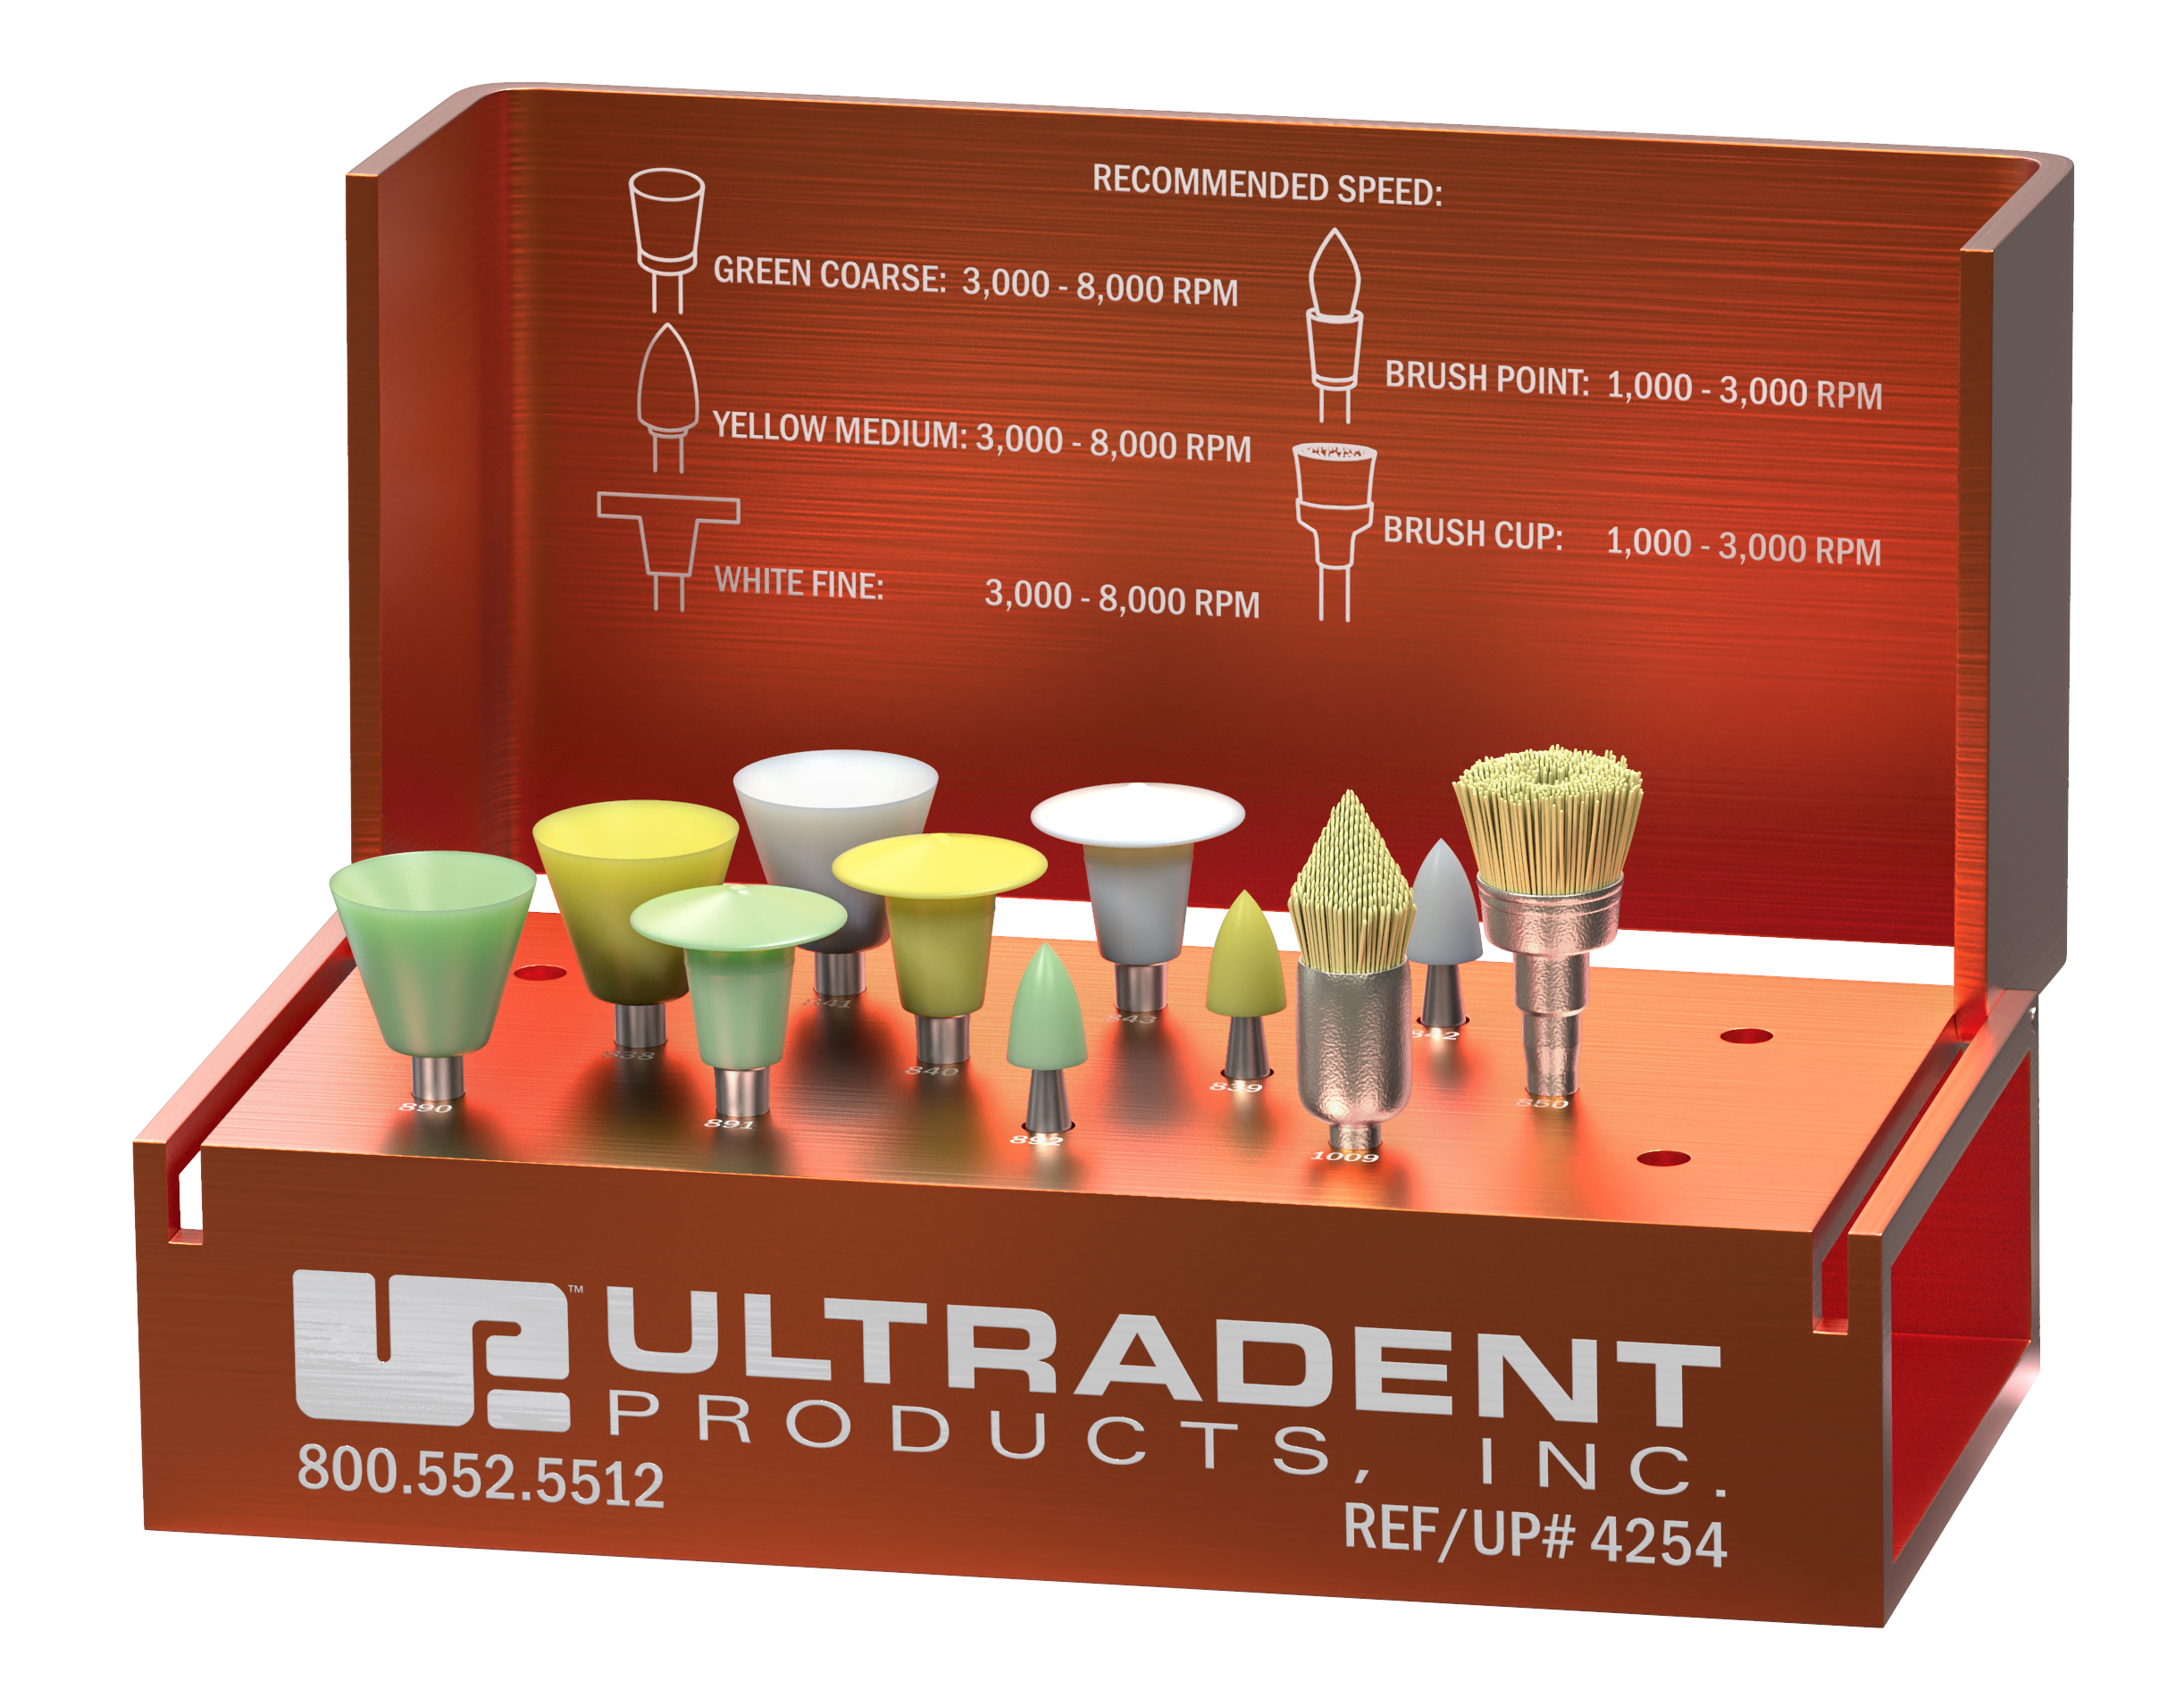 USA]Dental Composite Polishing Kit Rubber Polisher Resin Base For